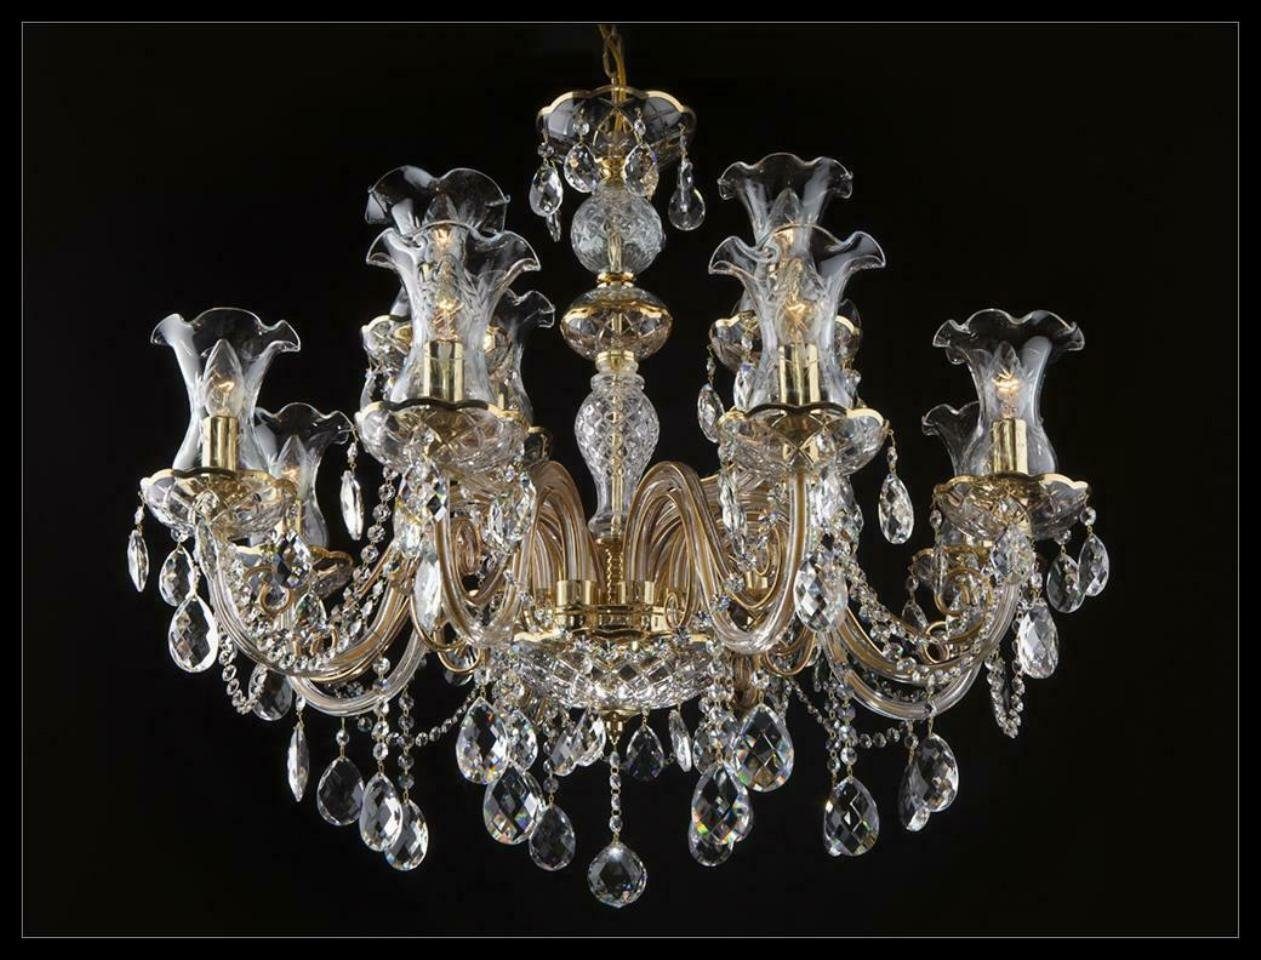 JVmoebel Kronleuchter Klassischer Kronleuchter Decken Leuchte Lampe Bohemia Beleuchtung, Warmweiß, Made in Europe